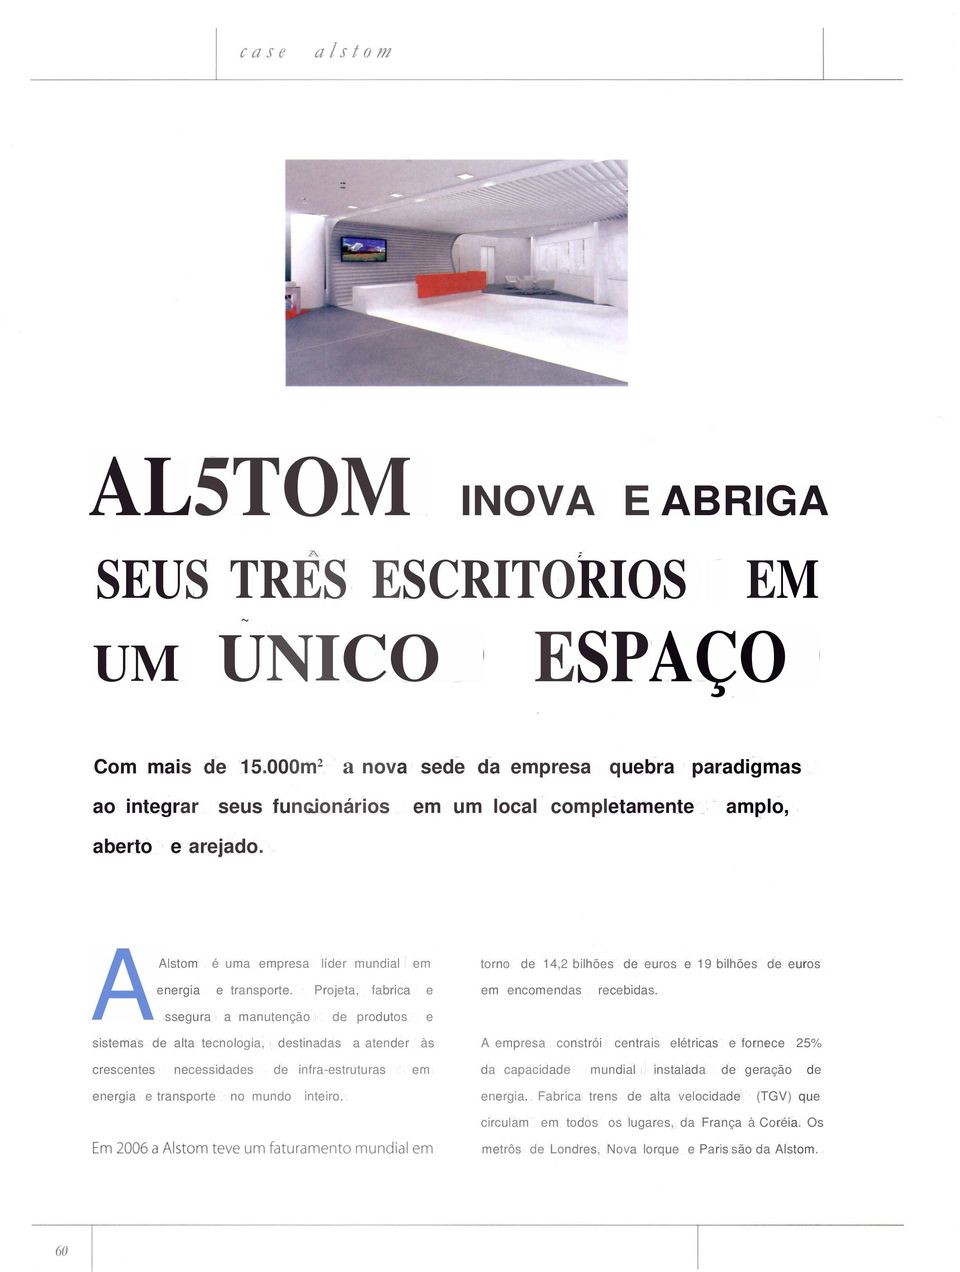 AAlstom é uma empresa líder mundial em torno de 14,2 bilhões de euros e 19 bilhões de euros energia e transporte. Projeta, fabrica e ssegura a manutenção de produtos e em encomendas recebidas.